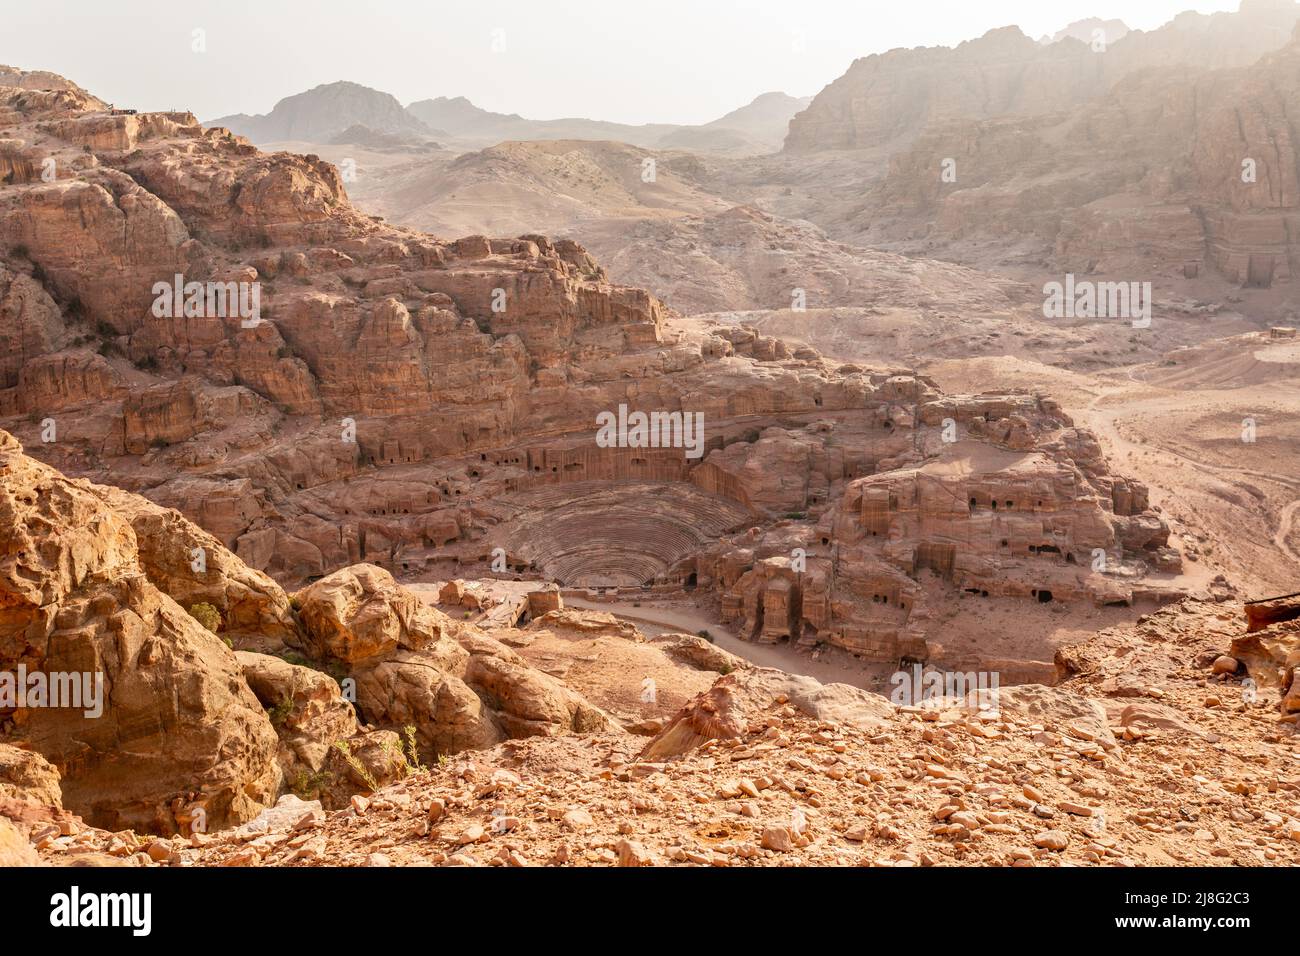 Vista desde arriba al teatro Nabataean tallado en piedra y las tumbas circundantes, Petra, Jordania Foto de stock